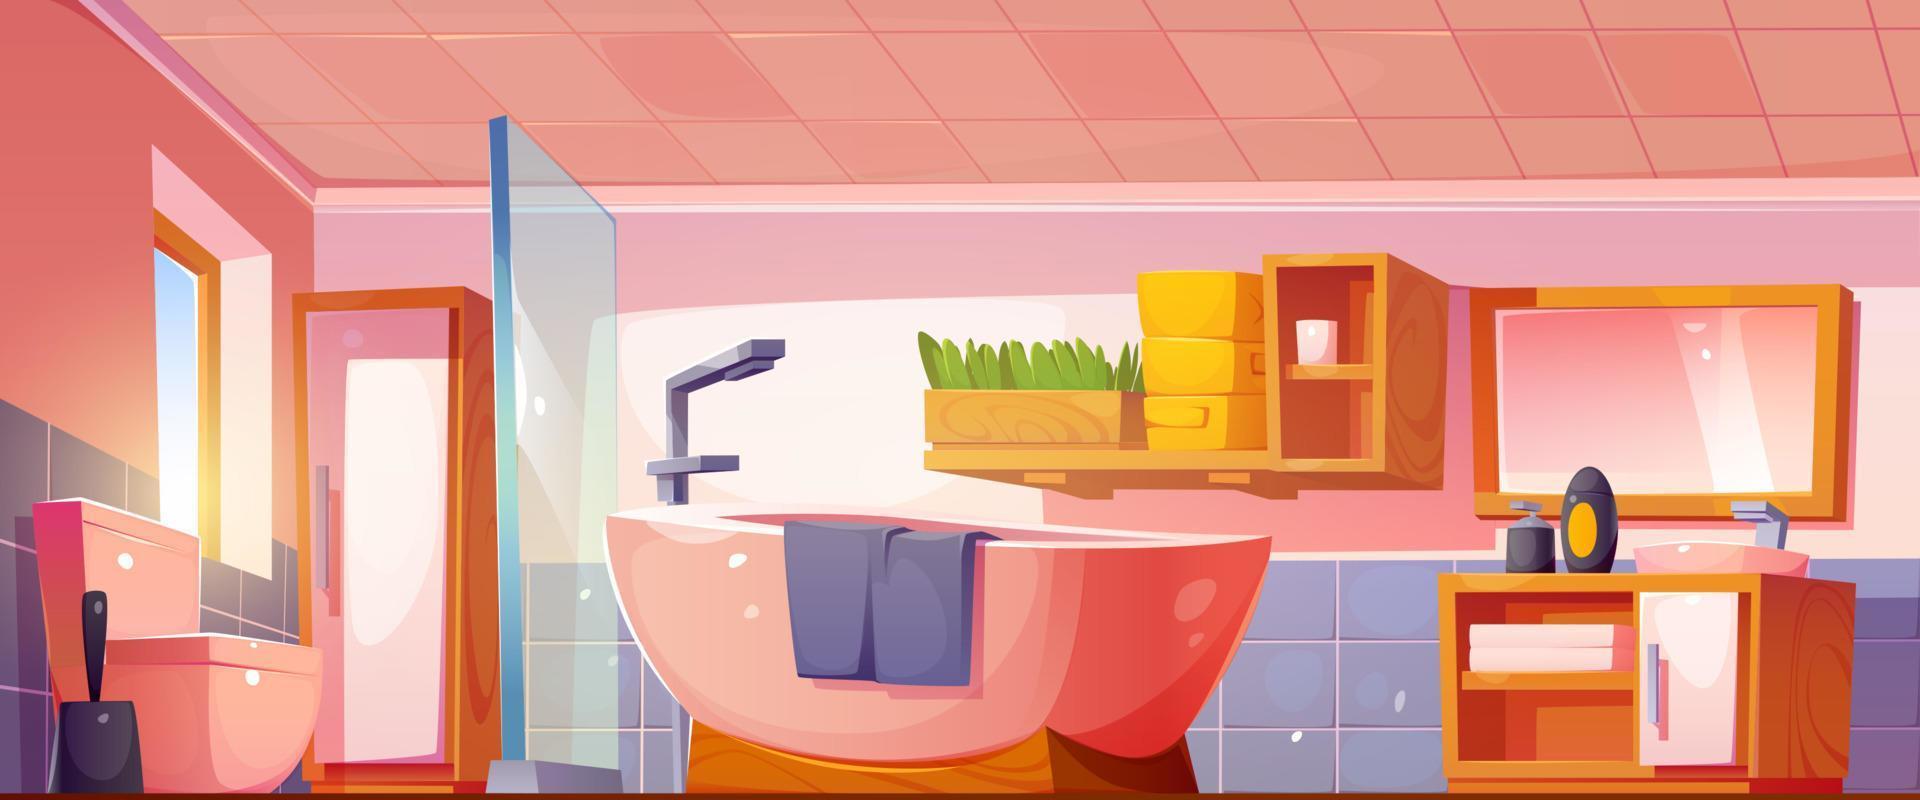 Cartoon bathroom interior design vector